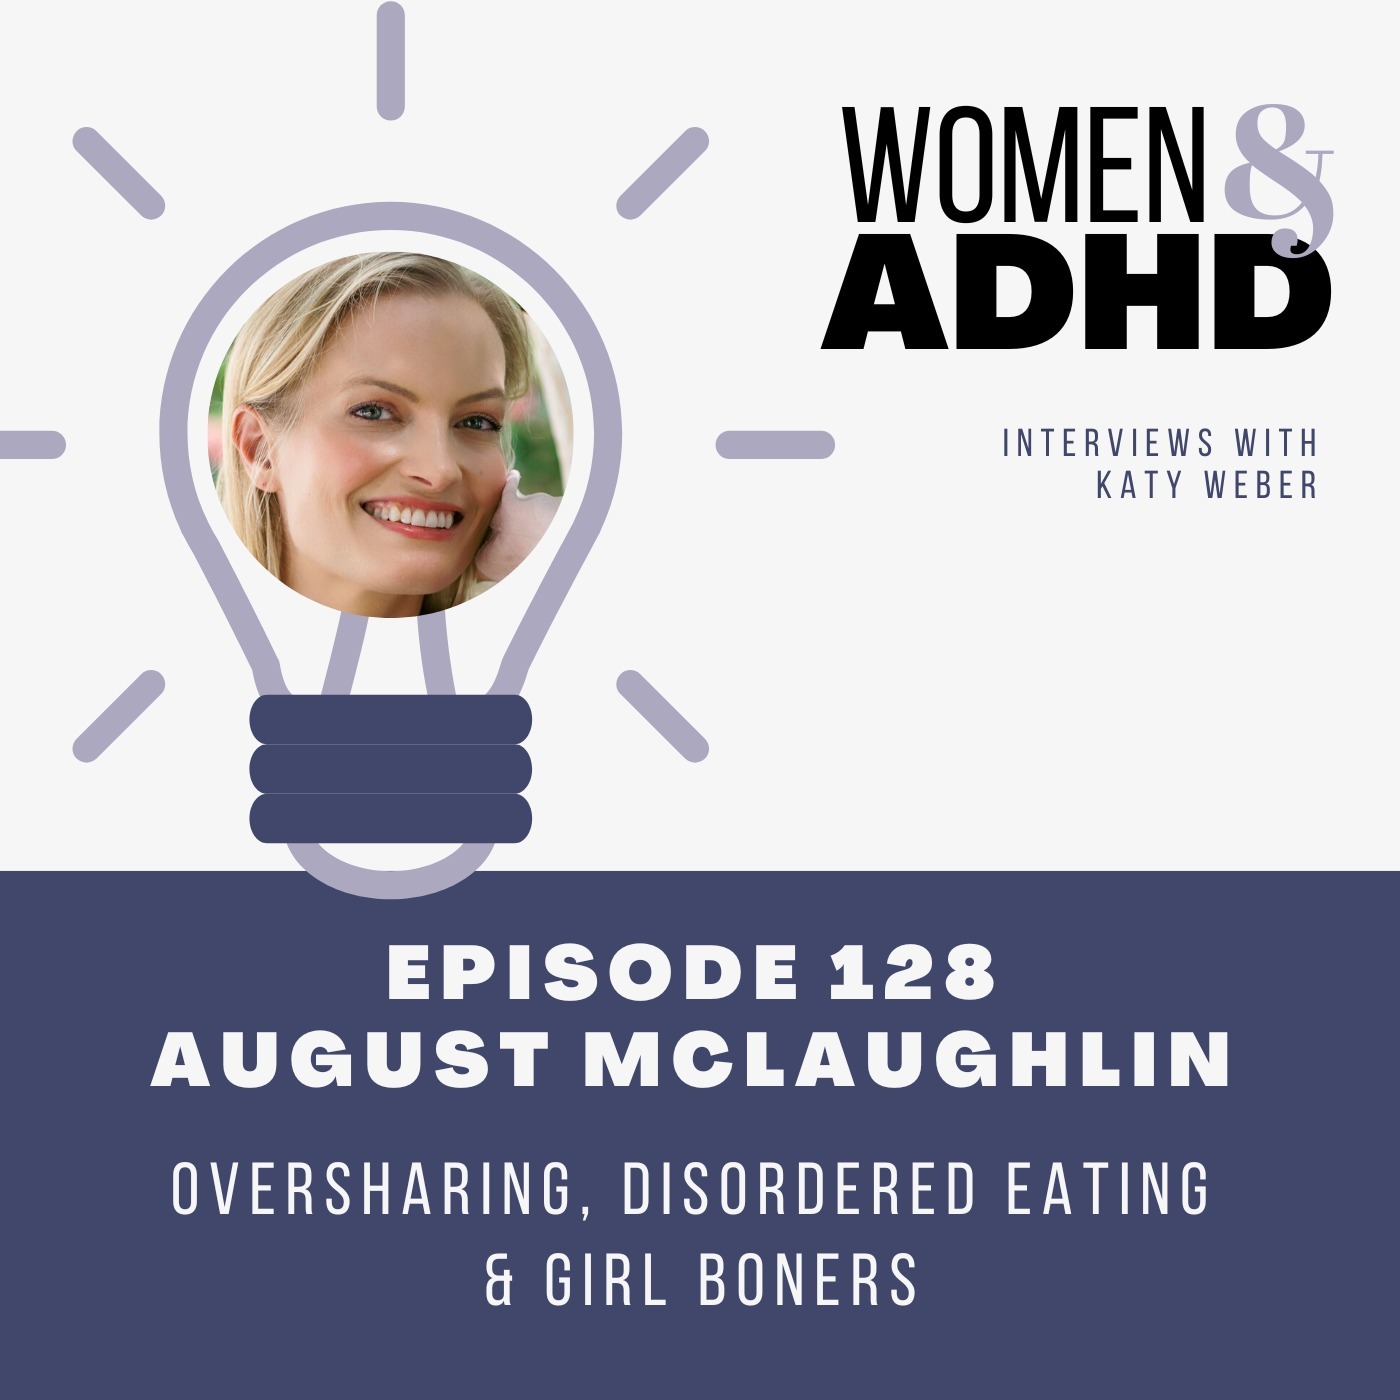 August McLaughlin: Oversharing, disordered eating & girl boners